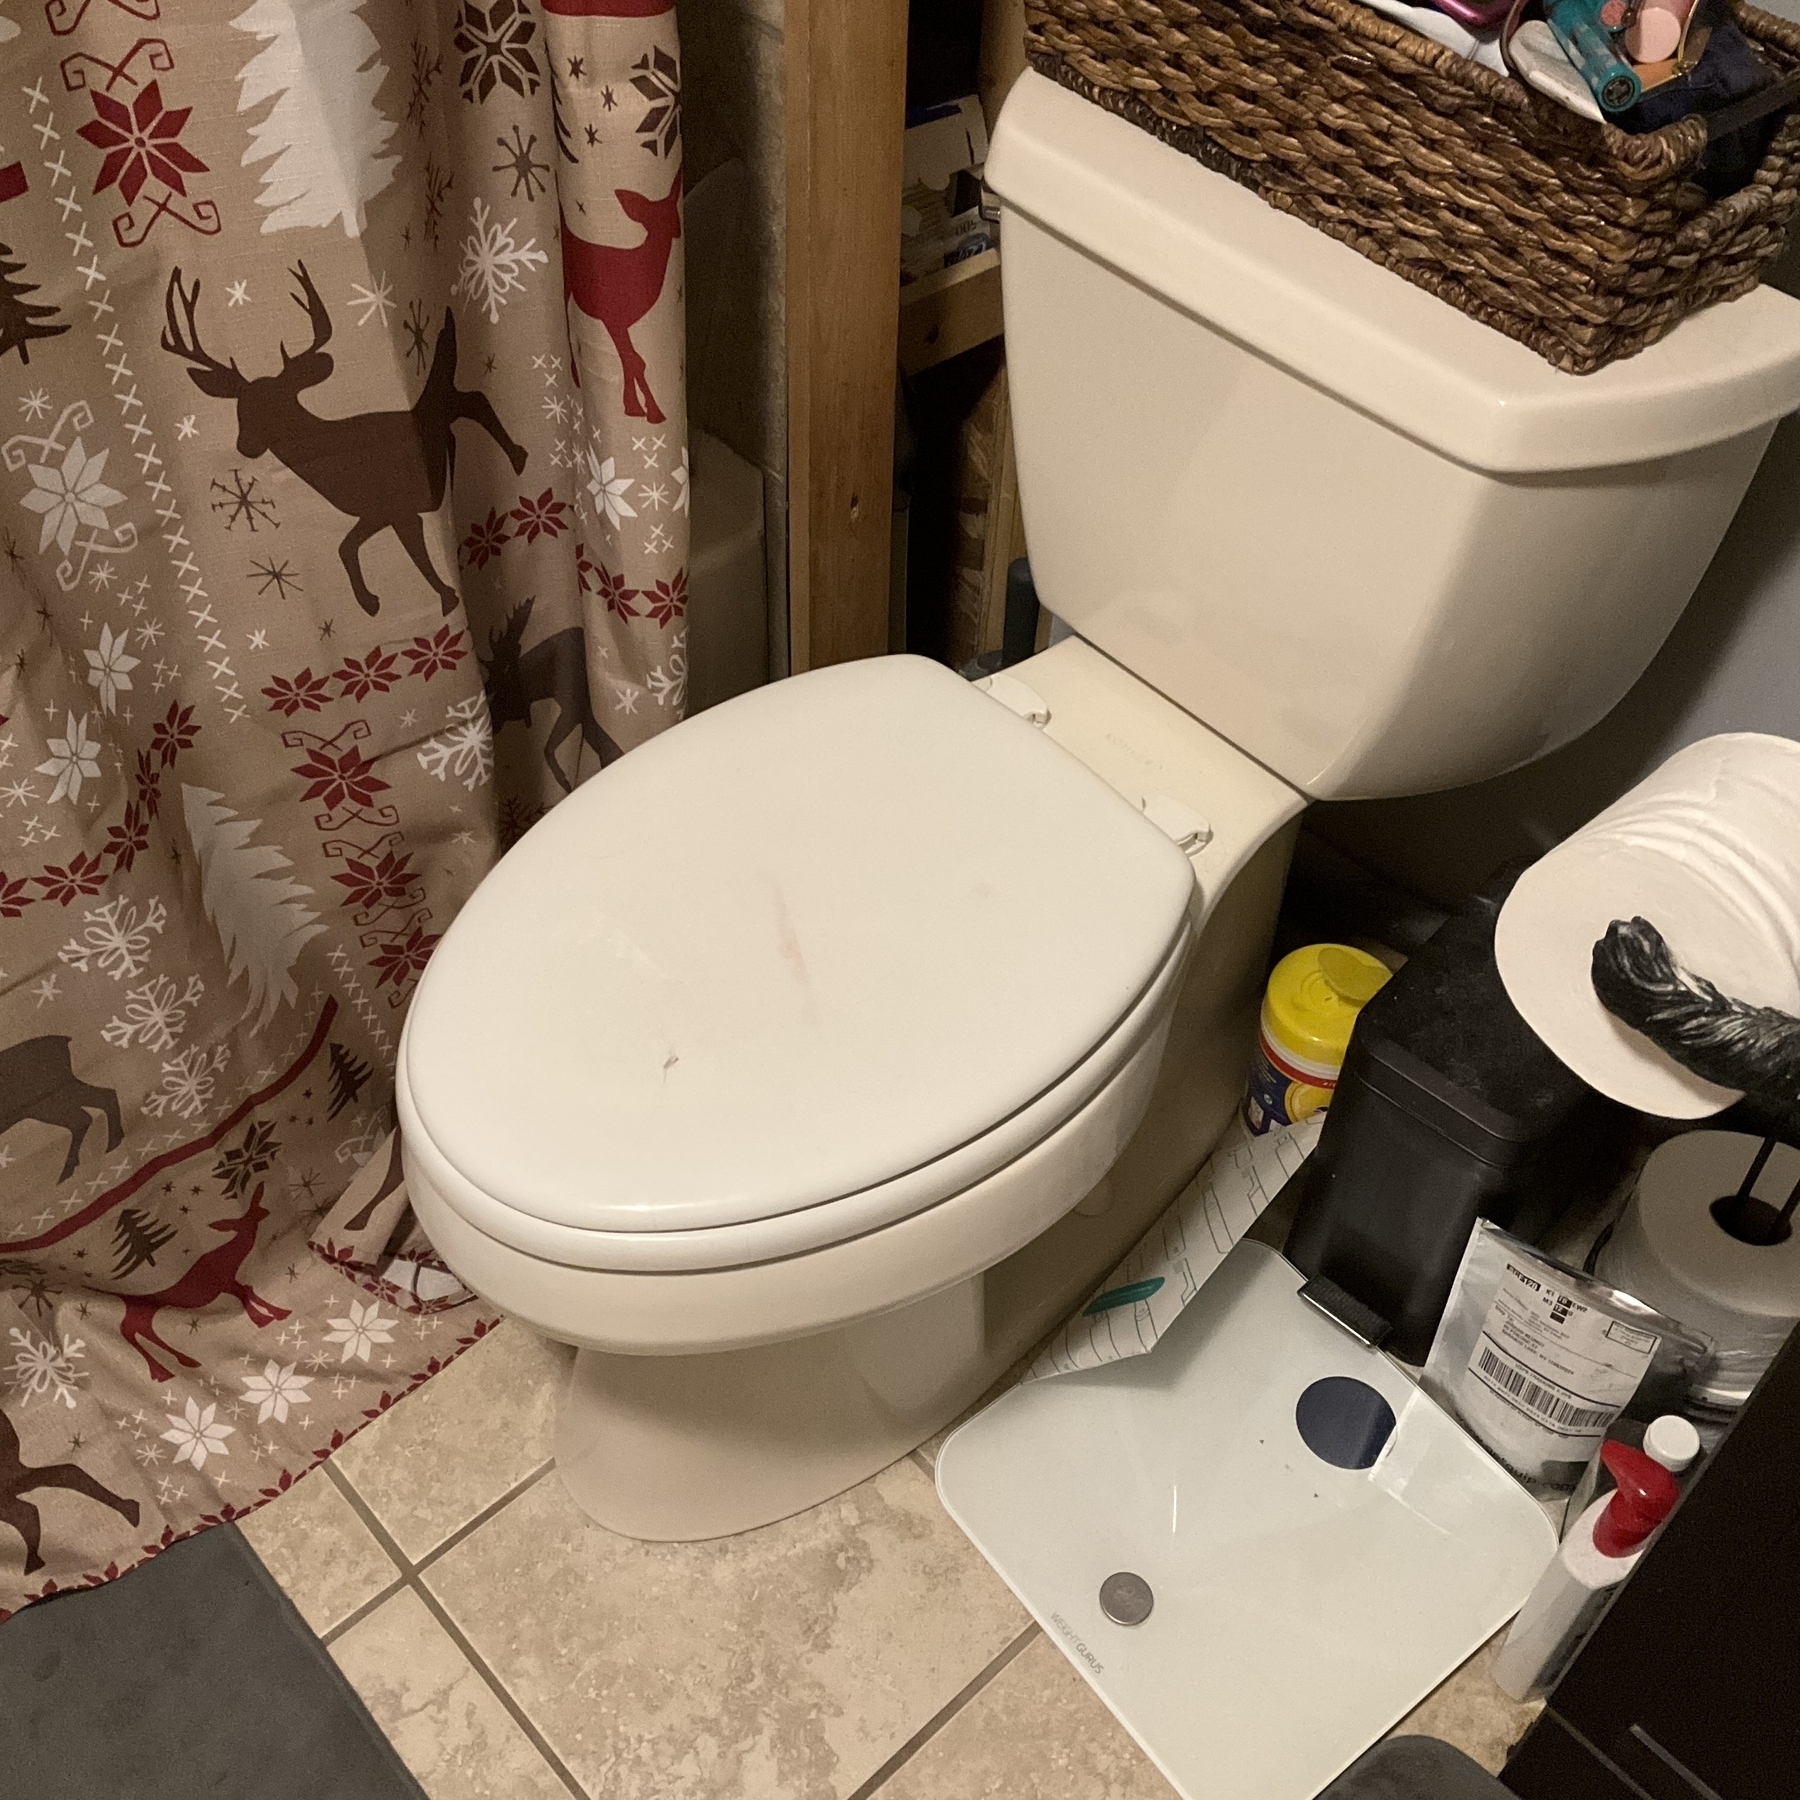 A toilet.